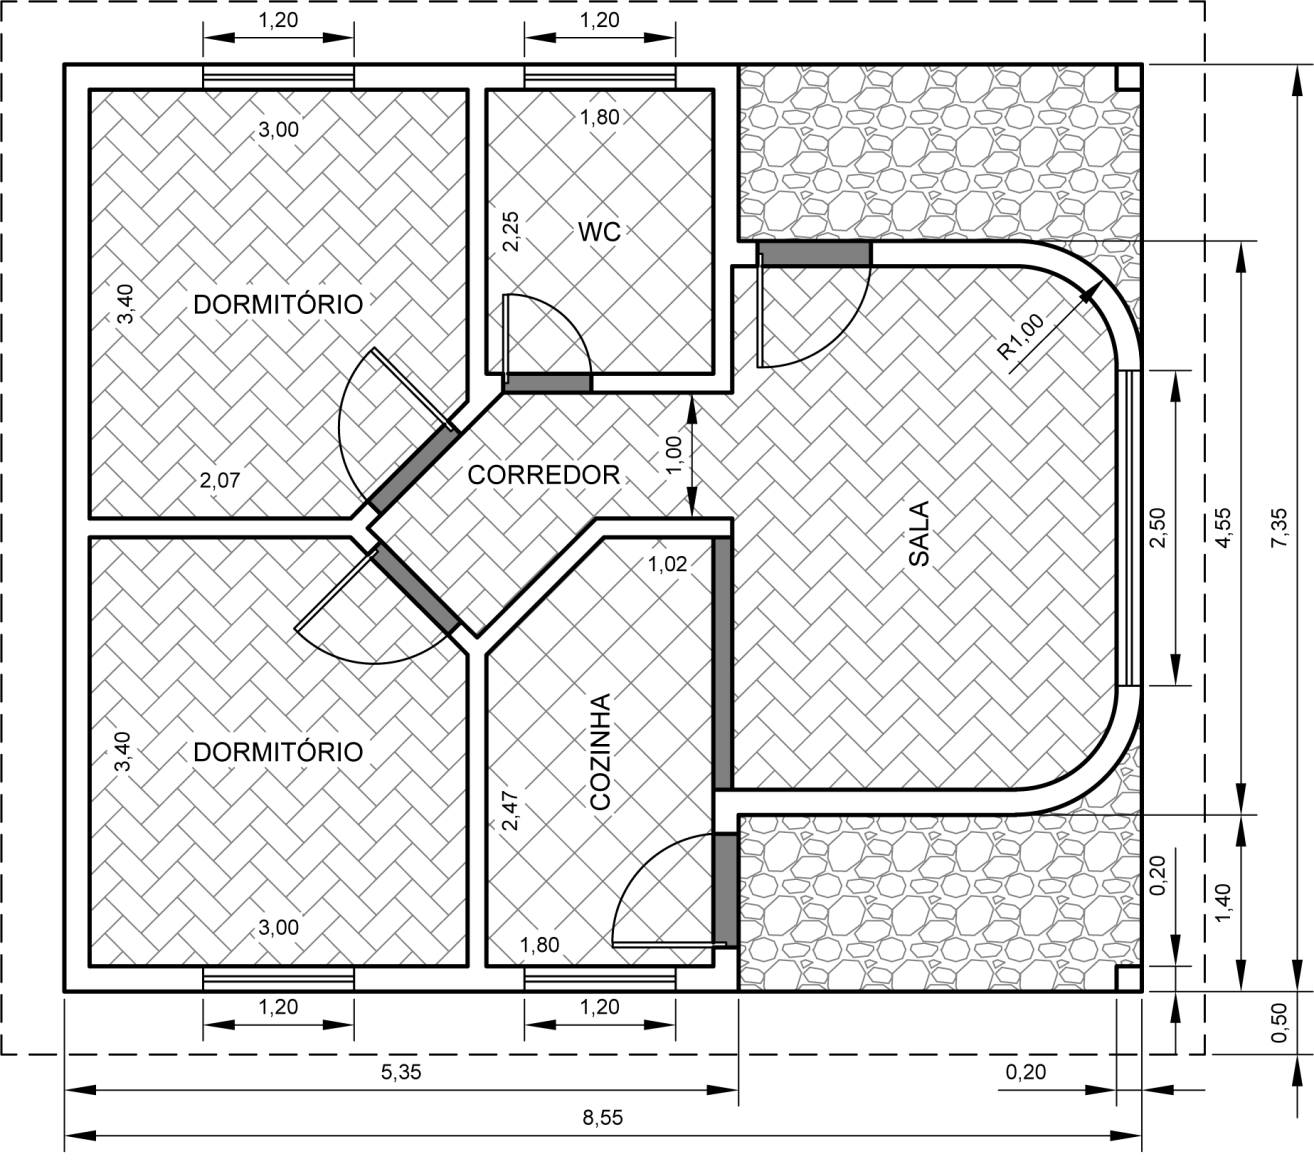 Programa de desenho 3D (gràtis) CCM - desenho de plantas de casas